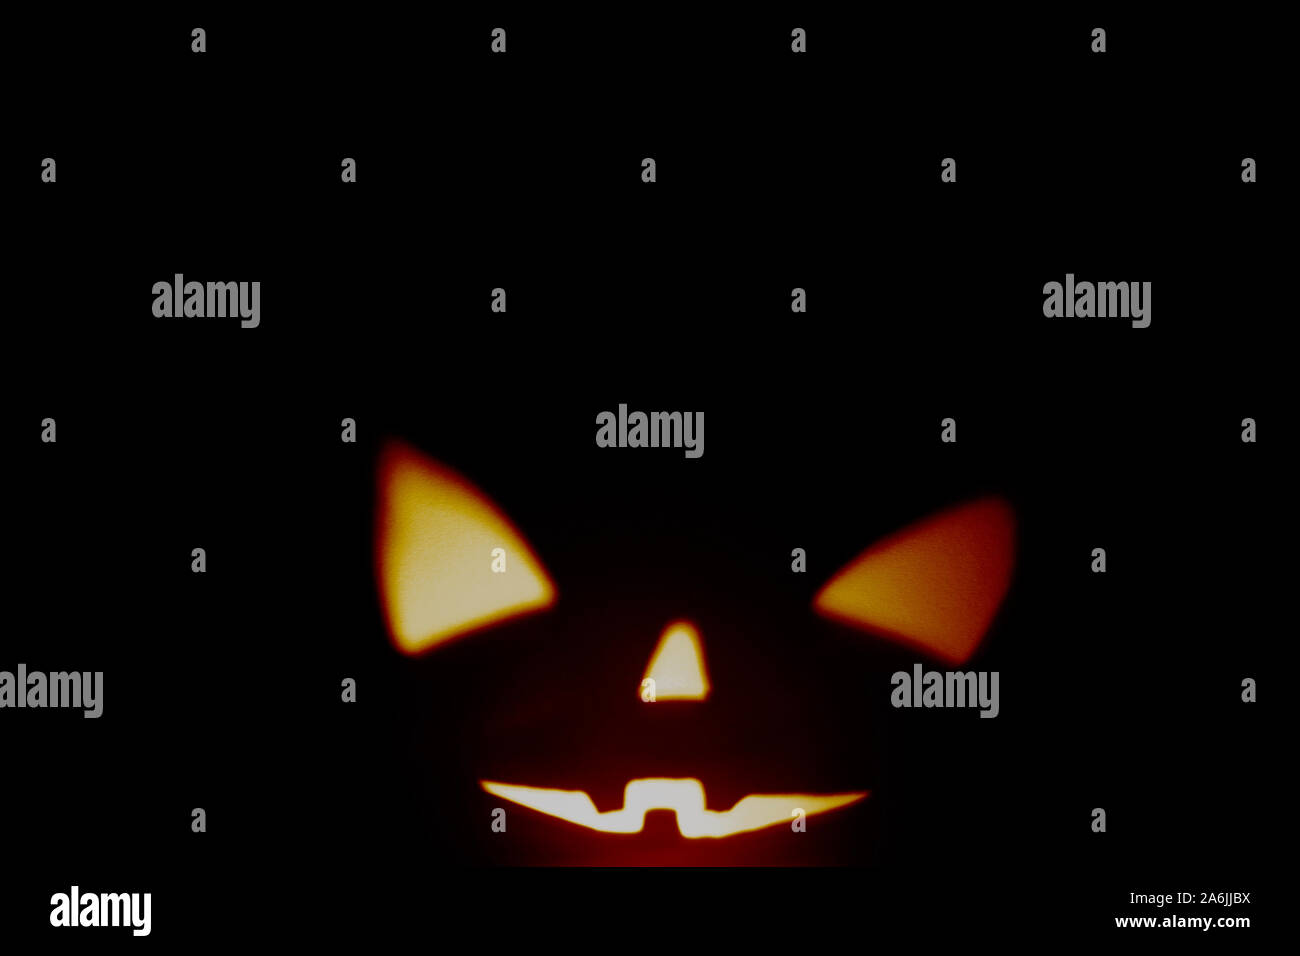 Schatten von Halloween scary pumpkin Gesicht auf dunklem Papier Hintergrund. Schatten aus dem Feuer. Halloween Horror Hintergrund. Kopieren Sie Platz. Stockfoto